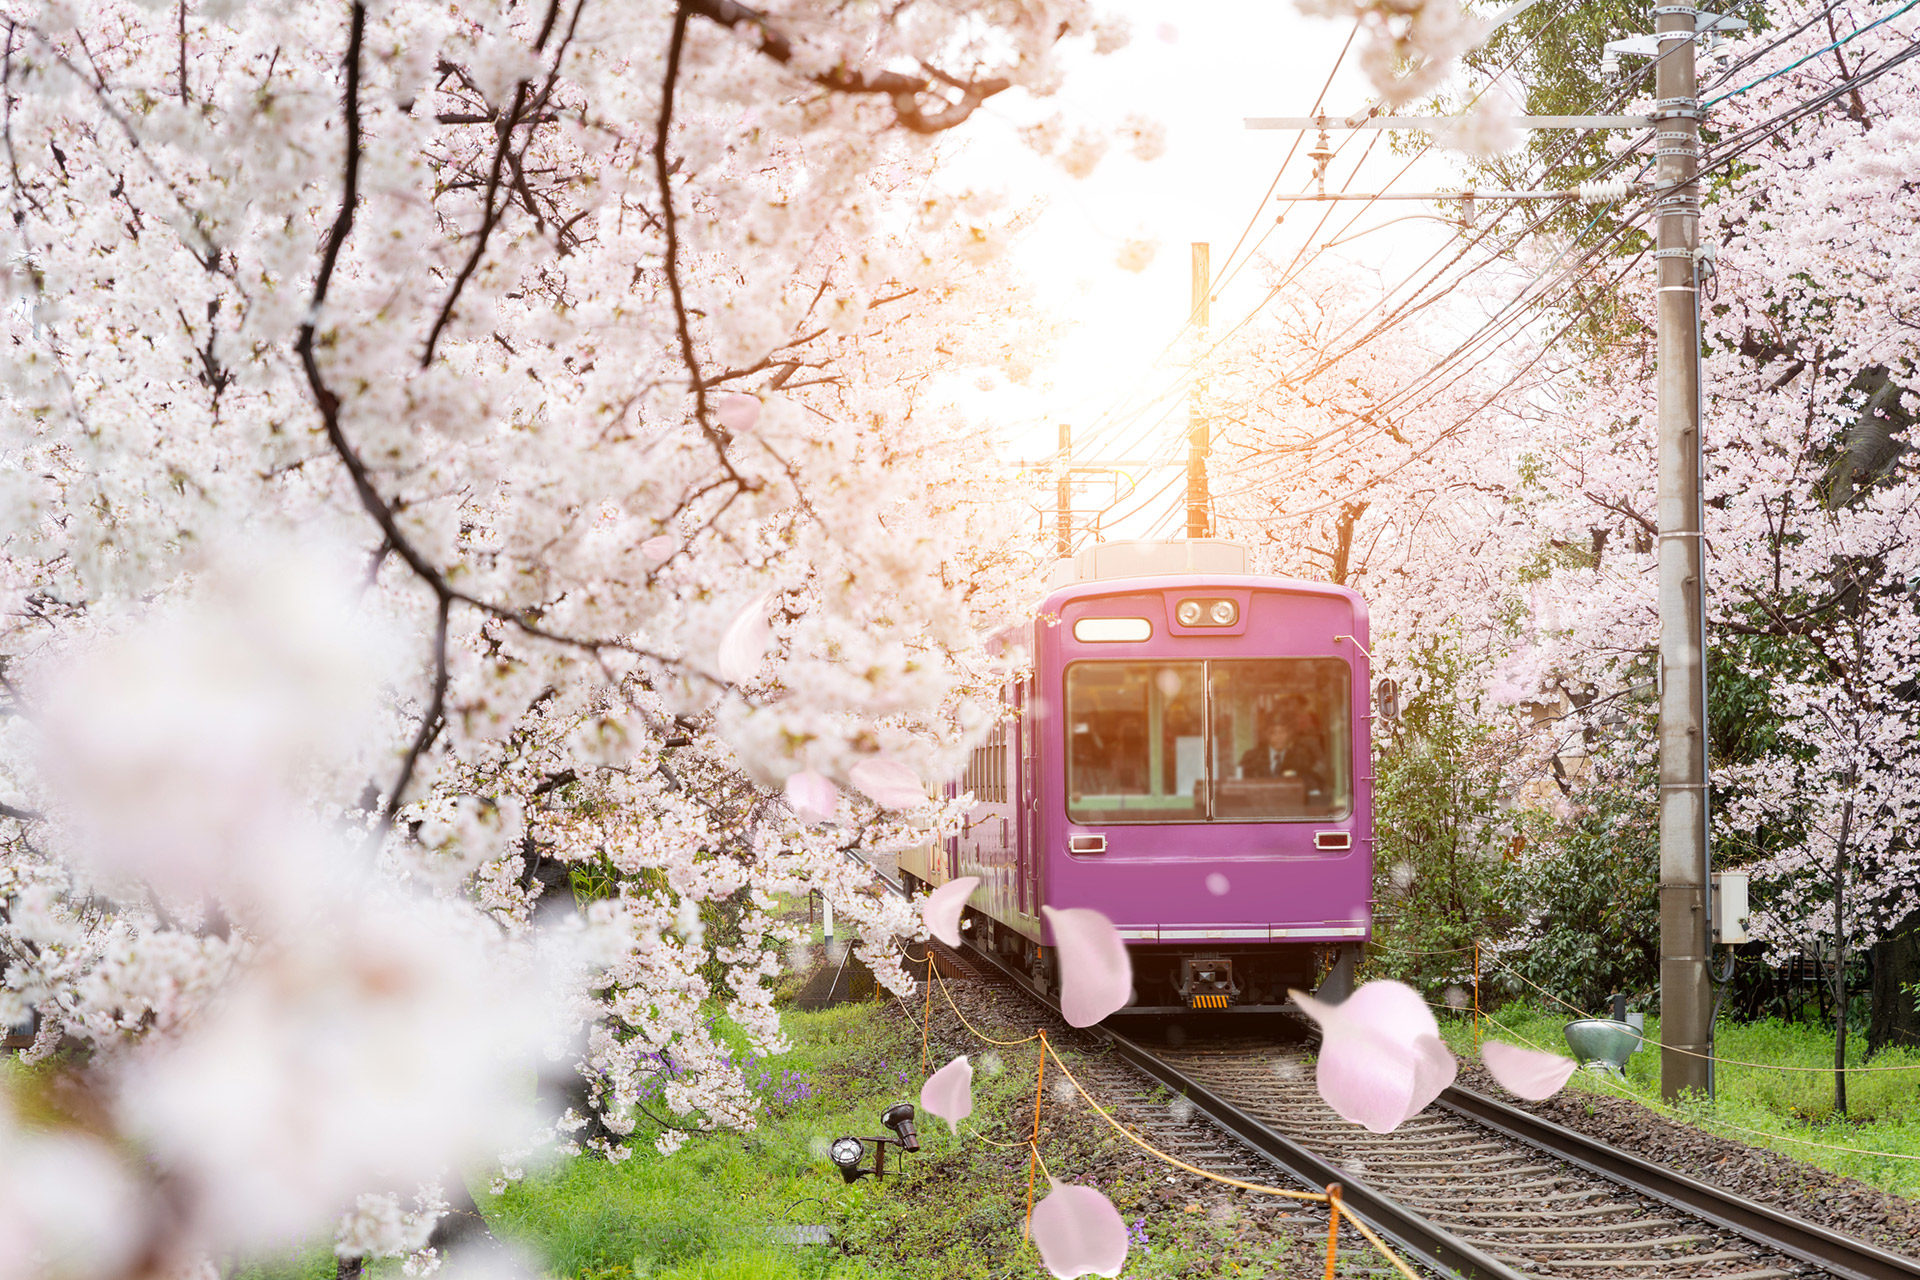 從線路上看到的櫻花景色